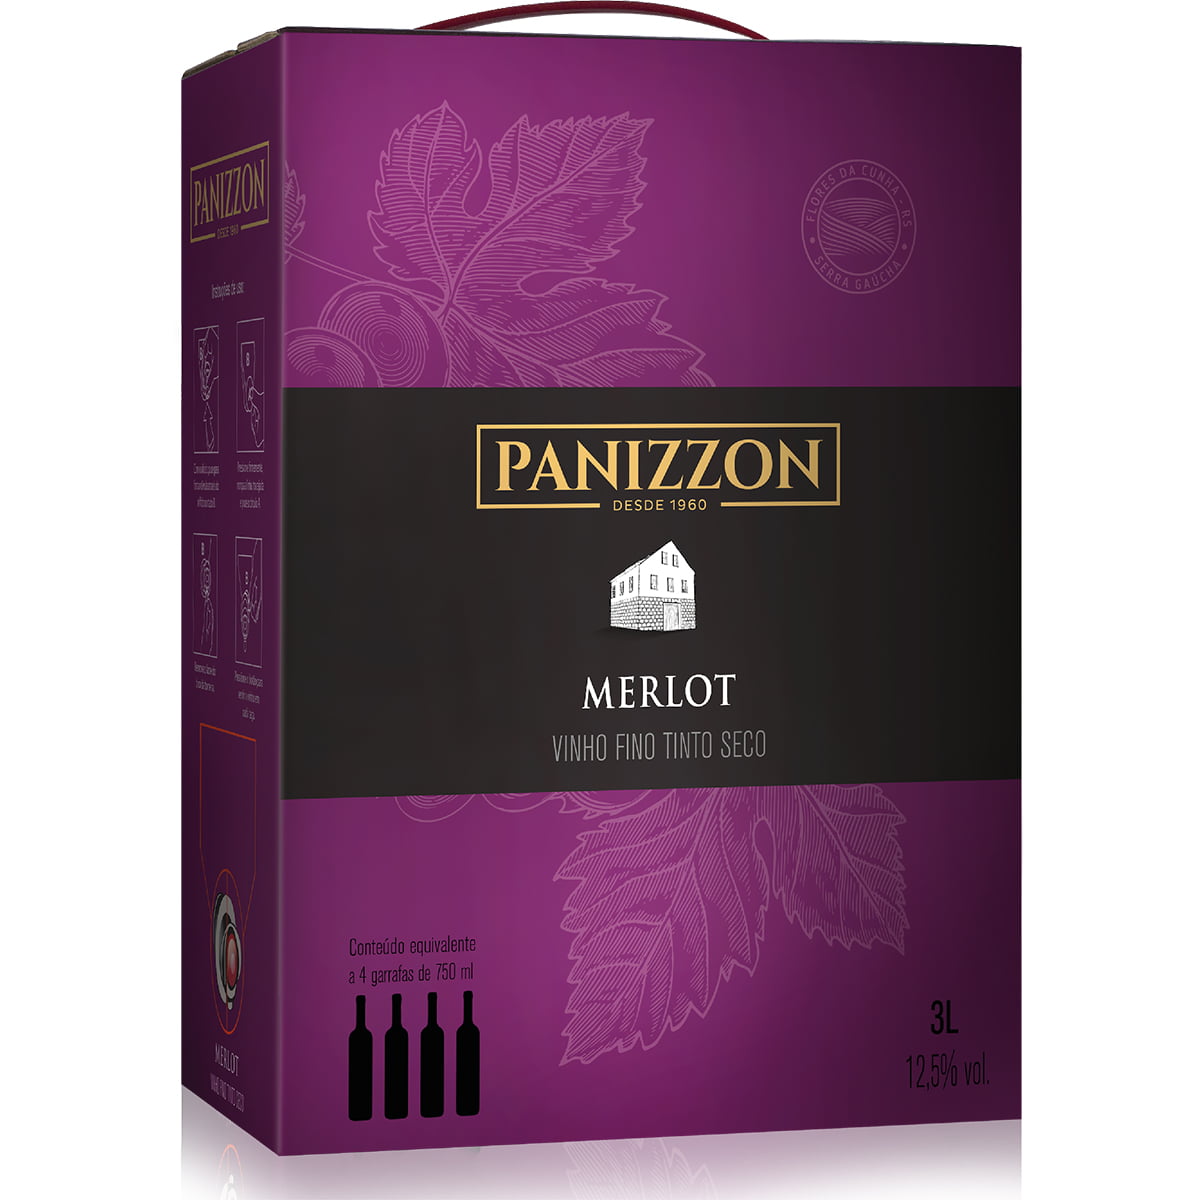 Panizzon Merlot Vinho Tinto Seco Bag in Box 3L